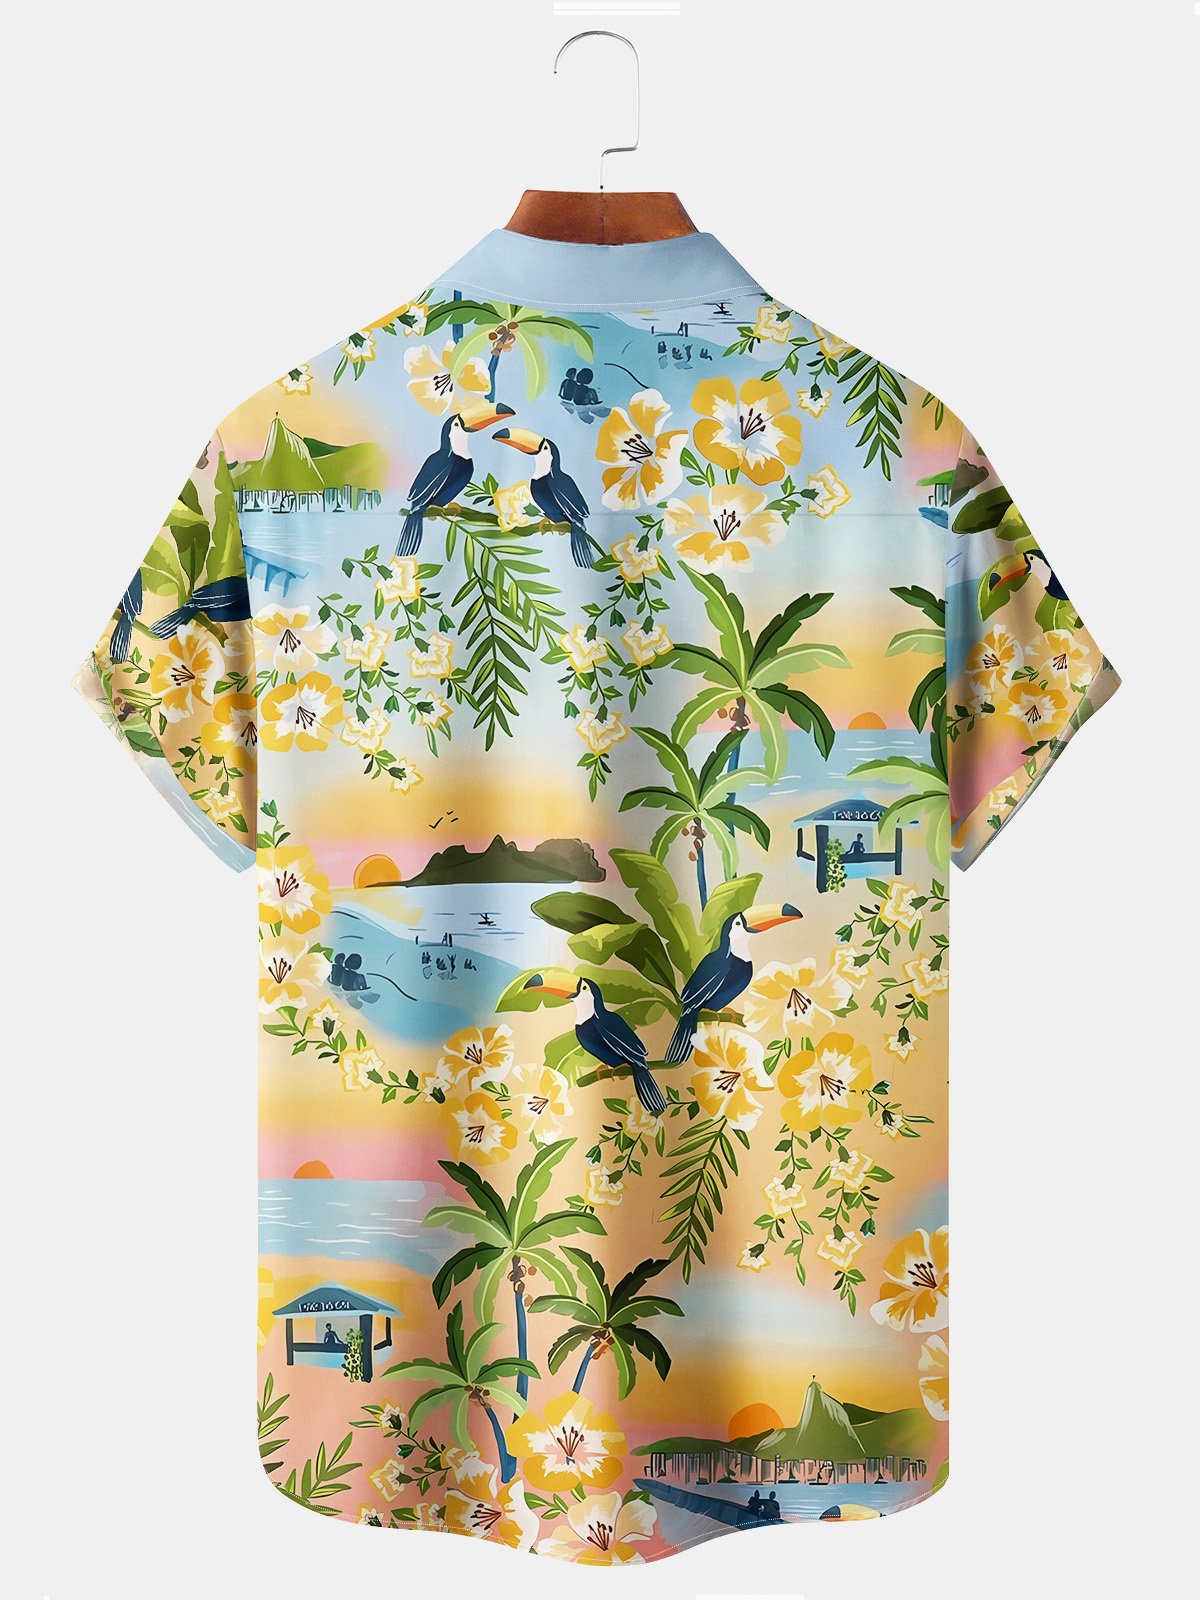 Royaura Beach Vacation Orange Men's Hawaiian Shirts Coconut Tree Cartoon Stretch Oversized Aloha Camp Pocket Shirts